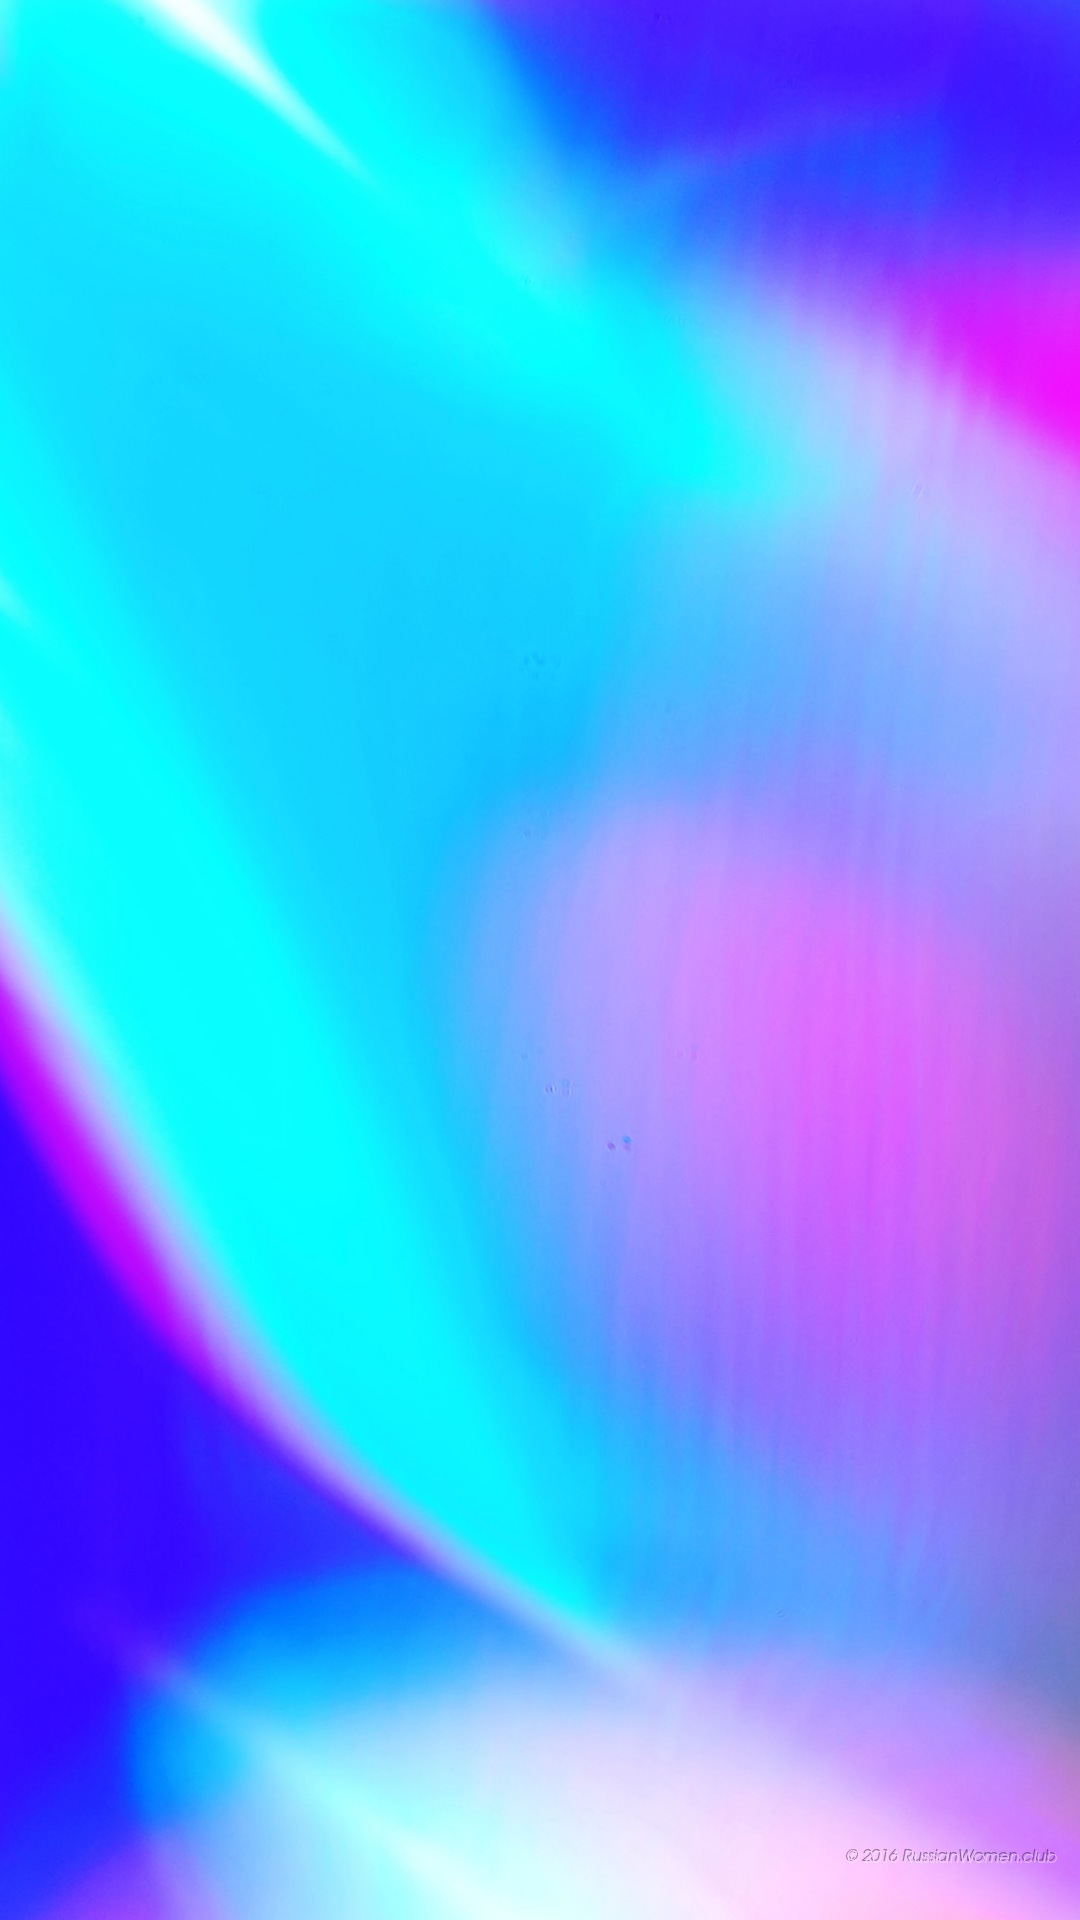 サムスンa5 2016壁紙,青い,バイオレット,緑,紫の,光